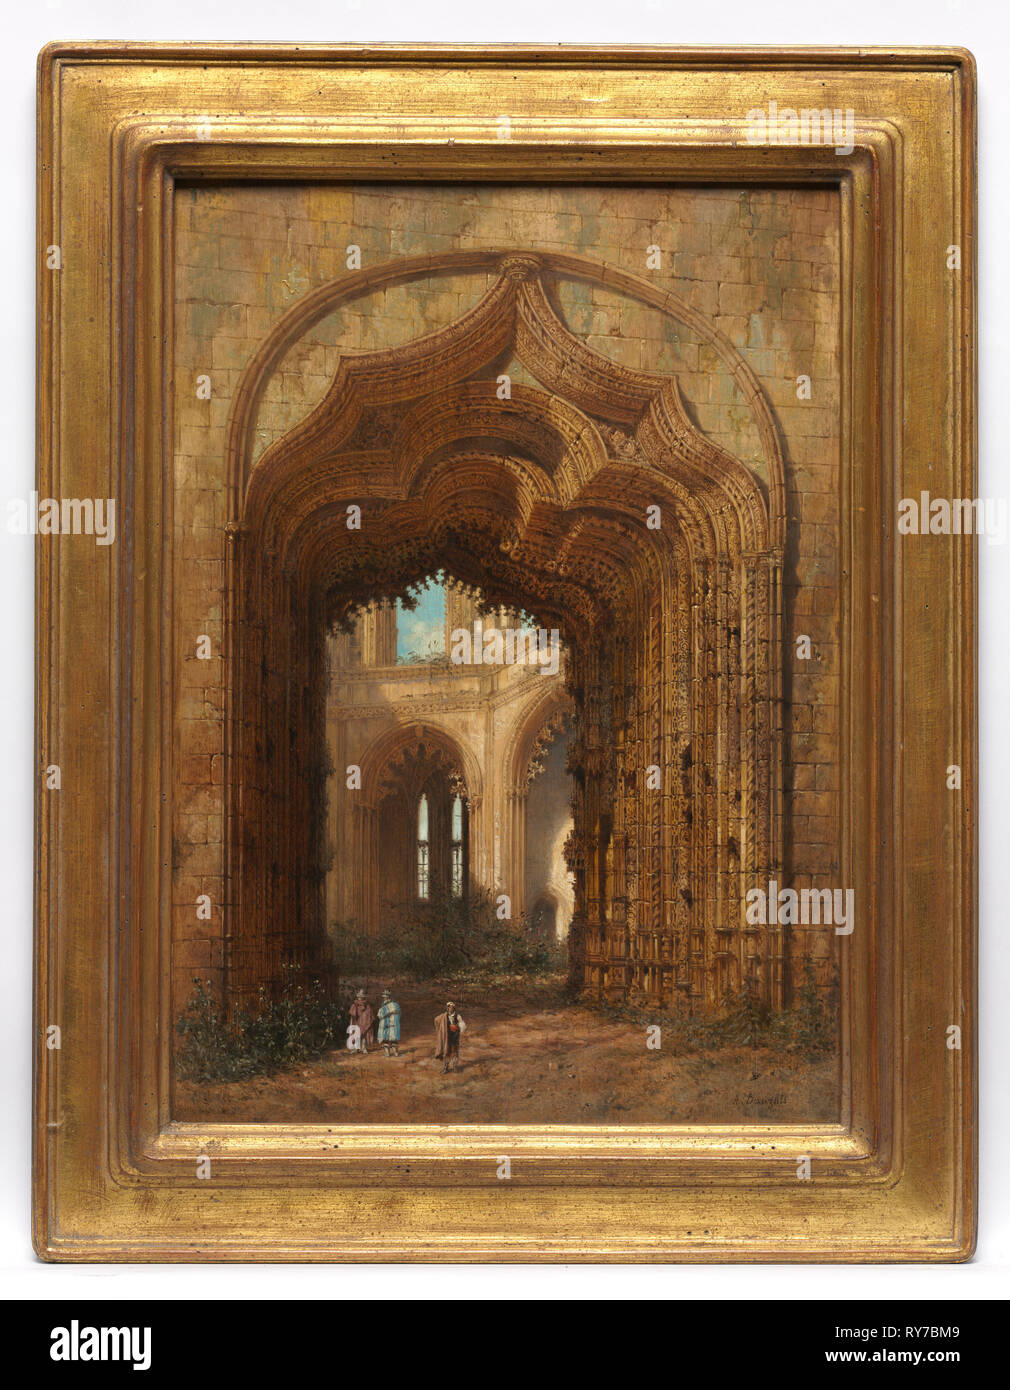 La Iglesia en ruinas, c. 1840. Adrien Dauzats (Francés, 1804-1868). El aceite en el tablero; sin enmarcar: 46,6 x 33,2 cm (18 3/8 x 13 1/16 in. Foto de stock